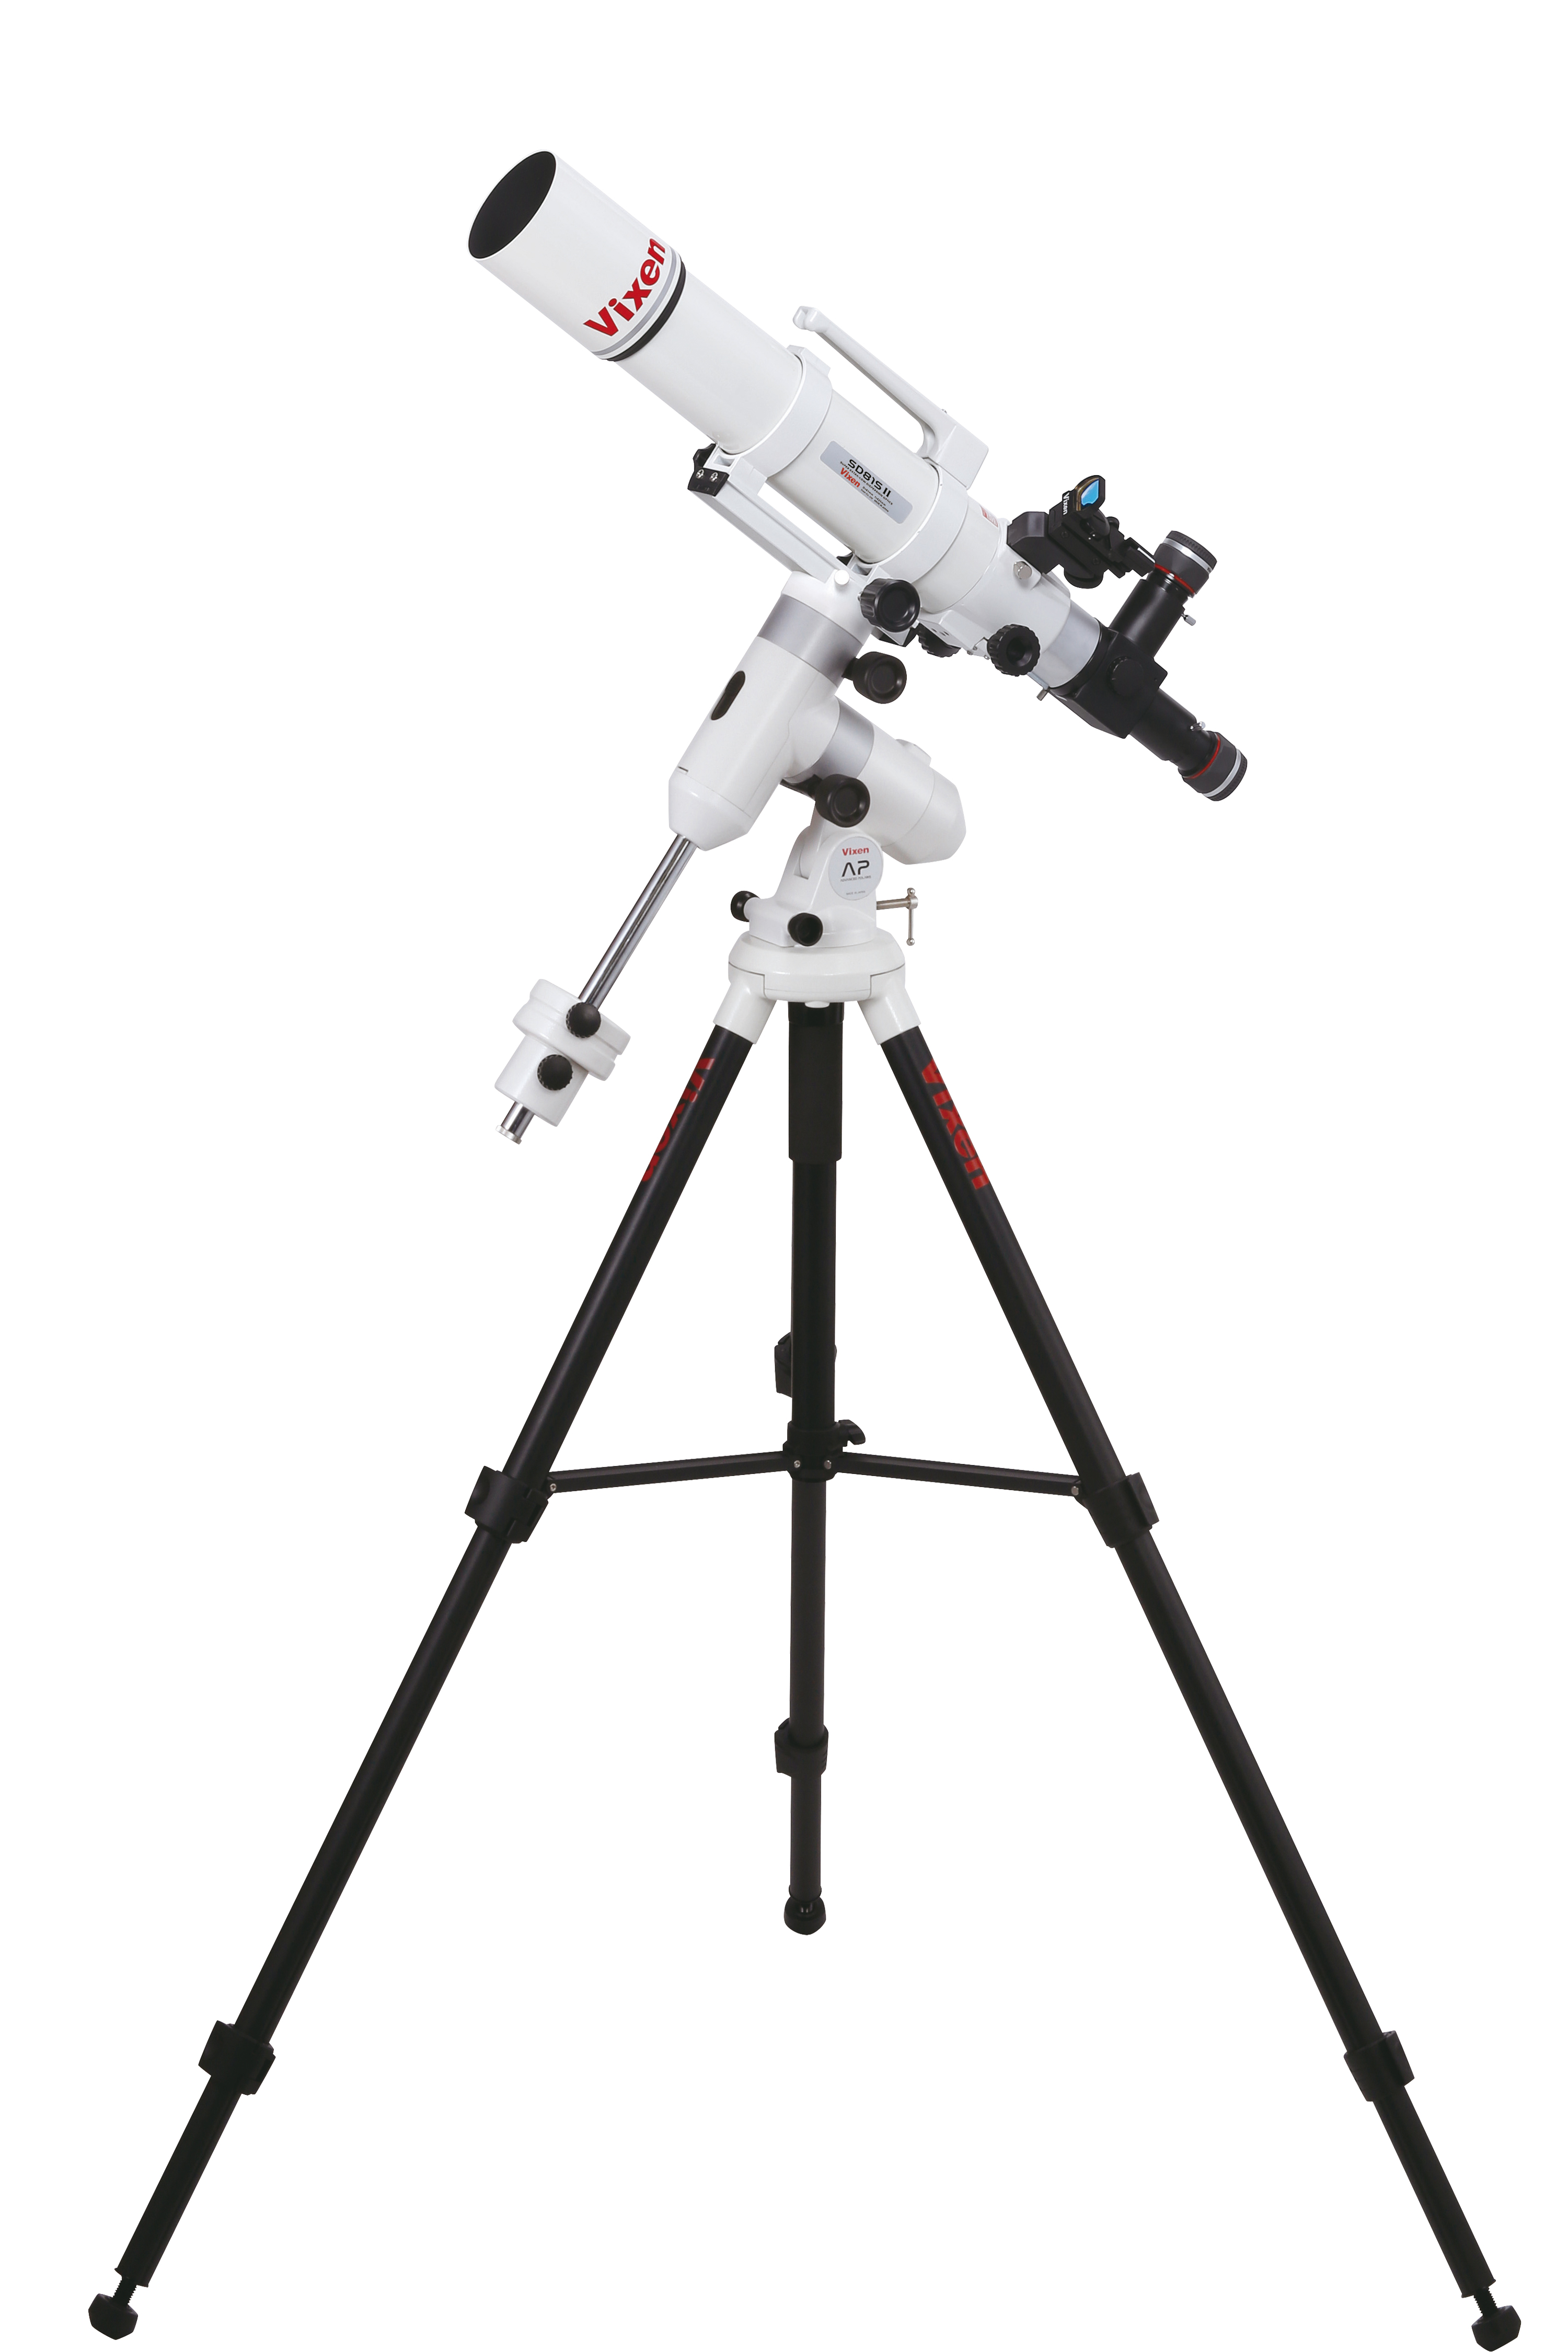 Vixen Conjunto de telescopio AP-SD81S II